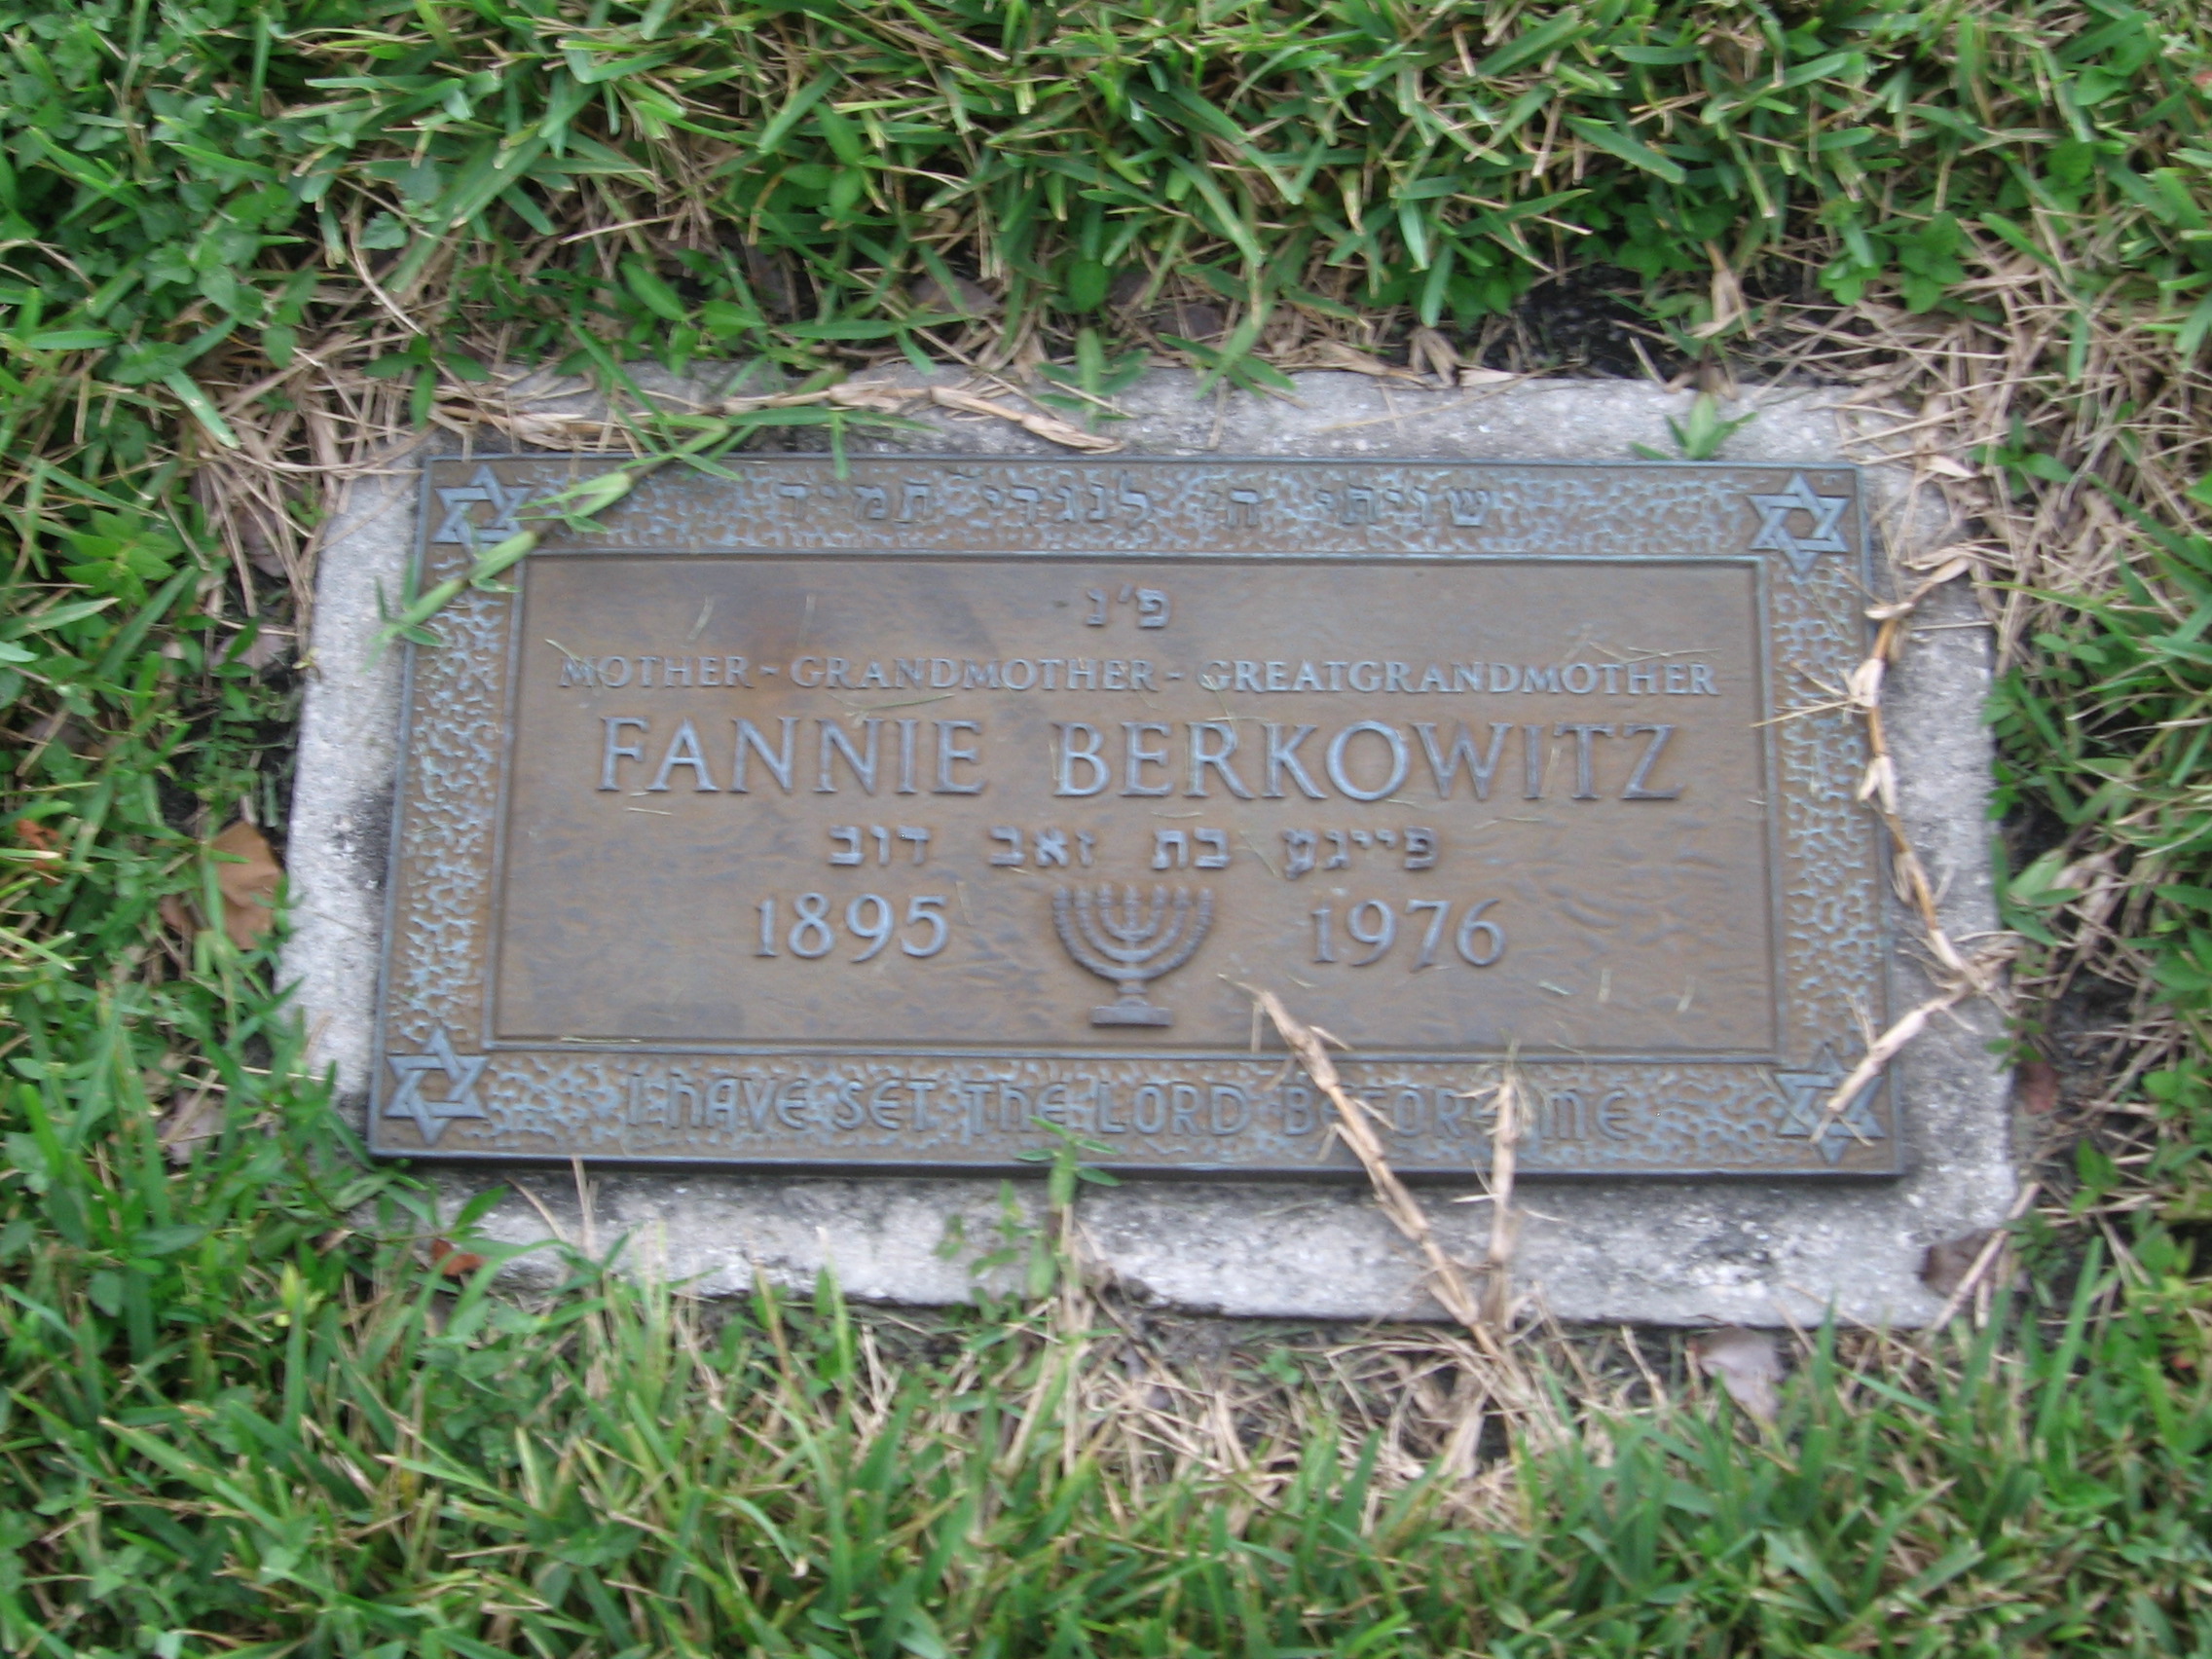 Fannie Berkowitz